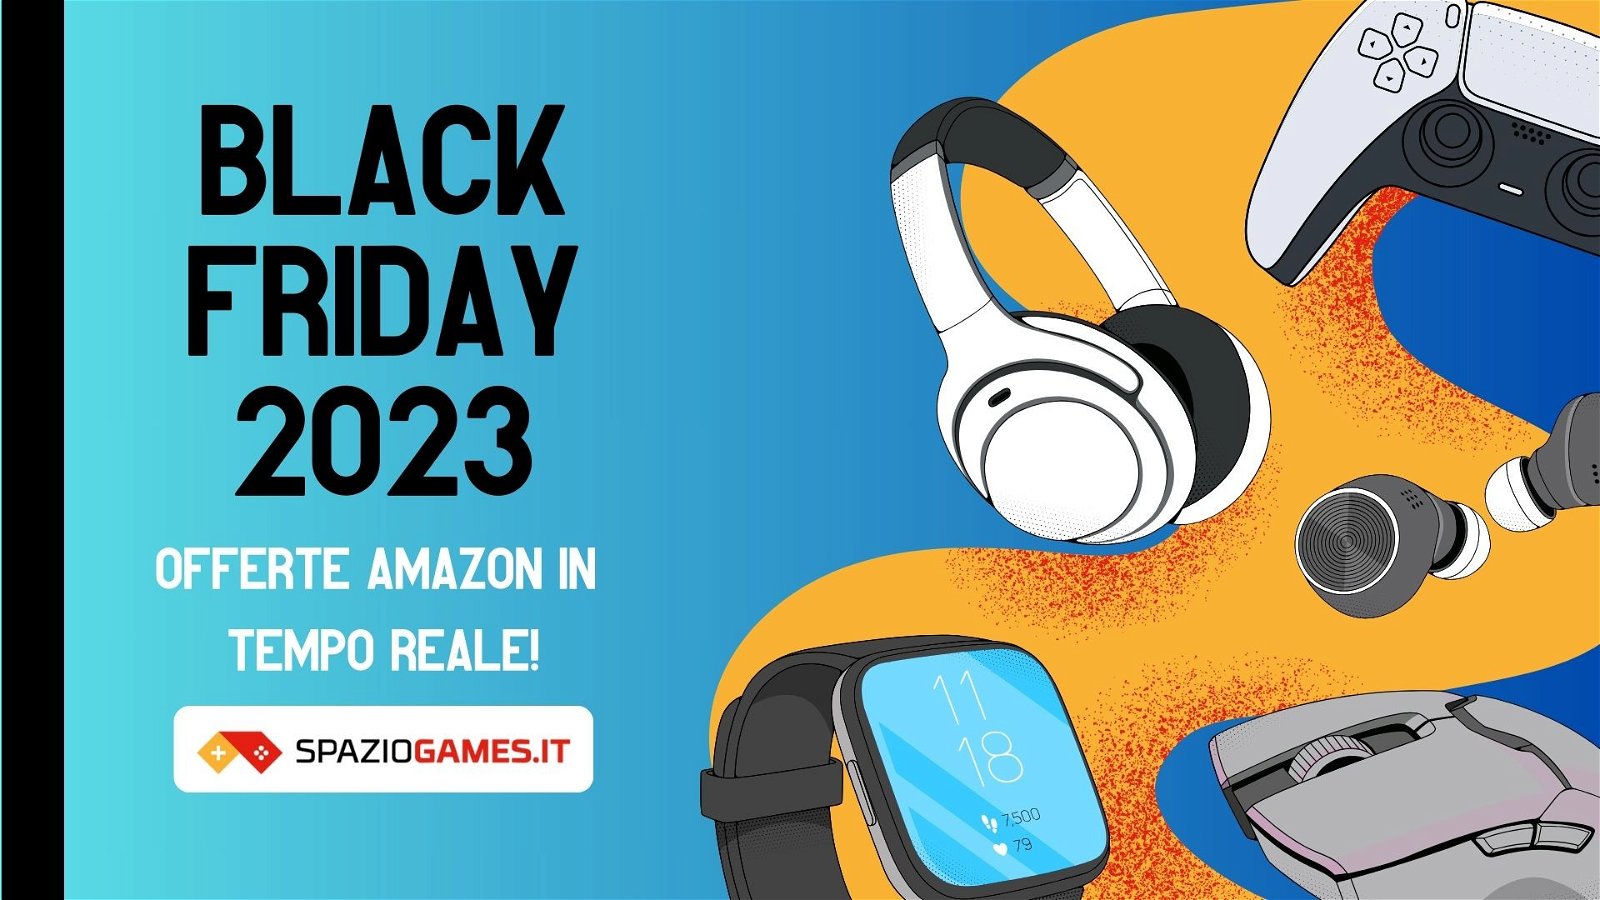 Black Friday Amazon: le offerte in tempo reale da non lasciarsi scappare!